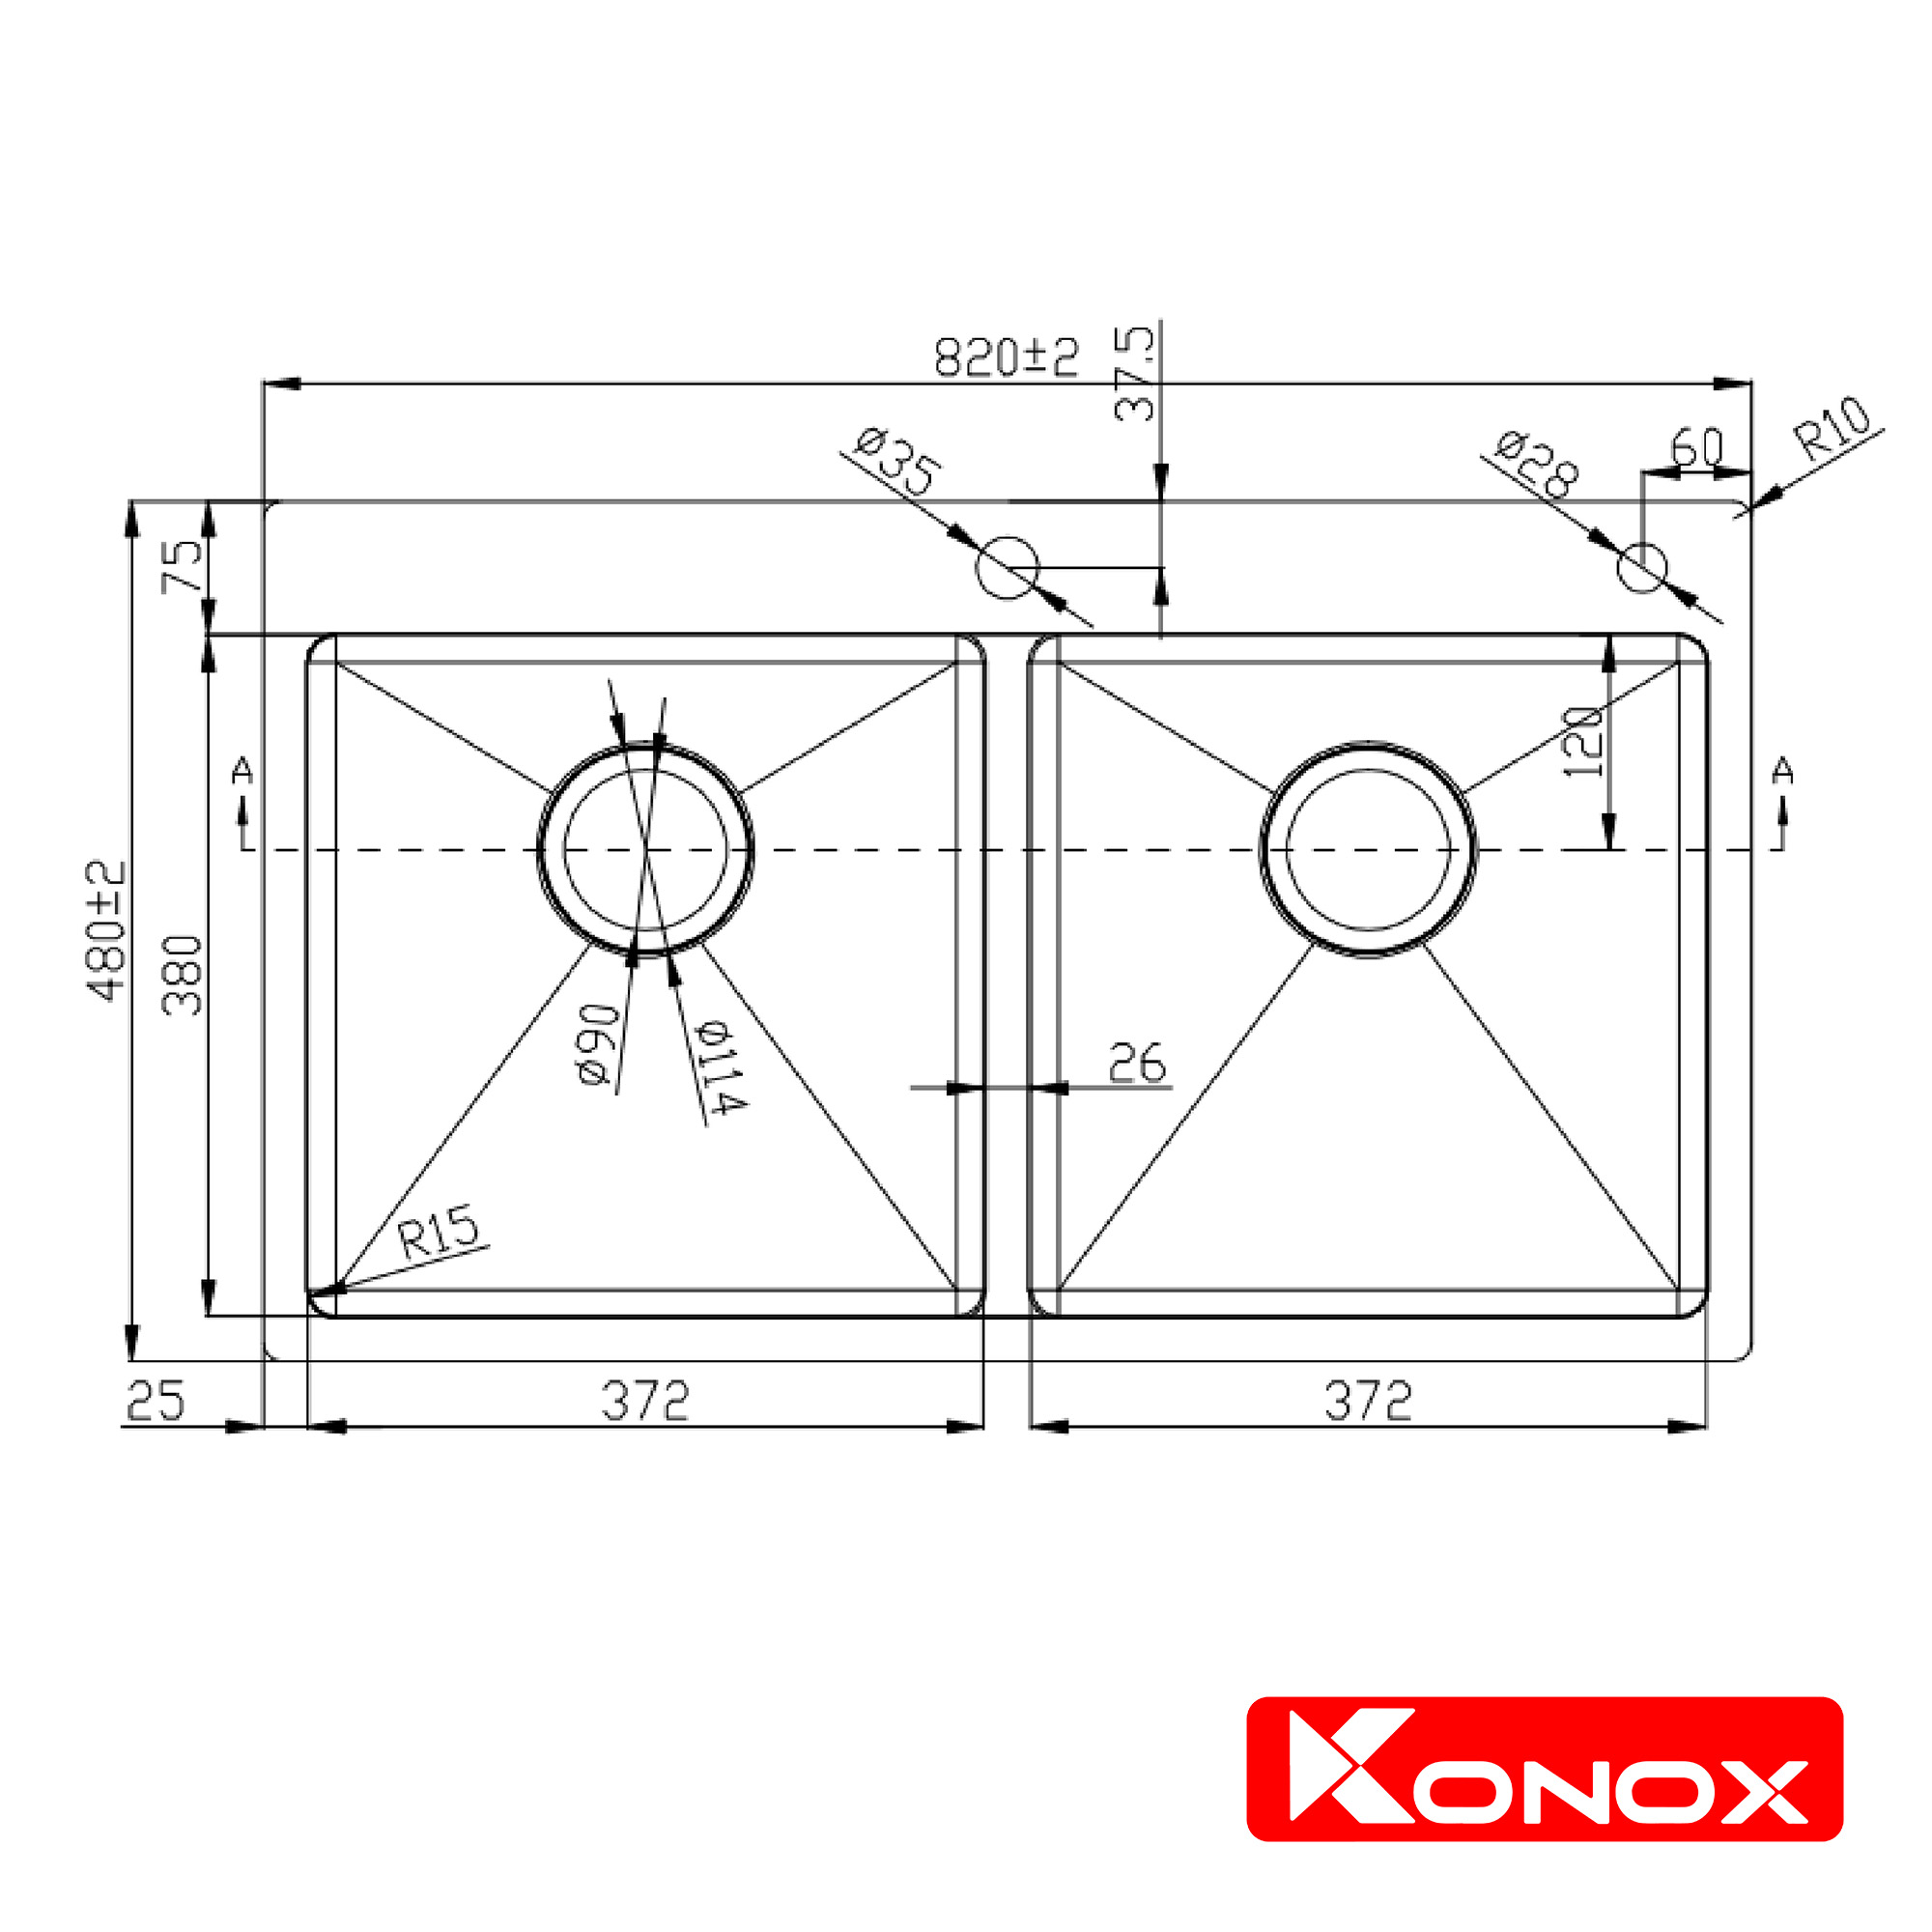 Chậu rửa bát Konox, Overmount Series, Model KN8248DOB , Inox 304AISI tiêu chuẩn châu Âu, 820x480x228(mm), Hàng chính hãng